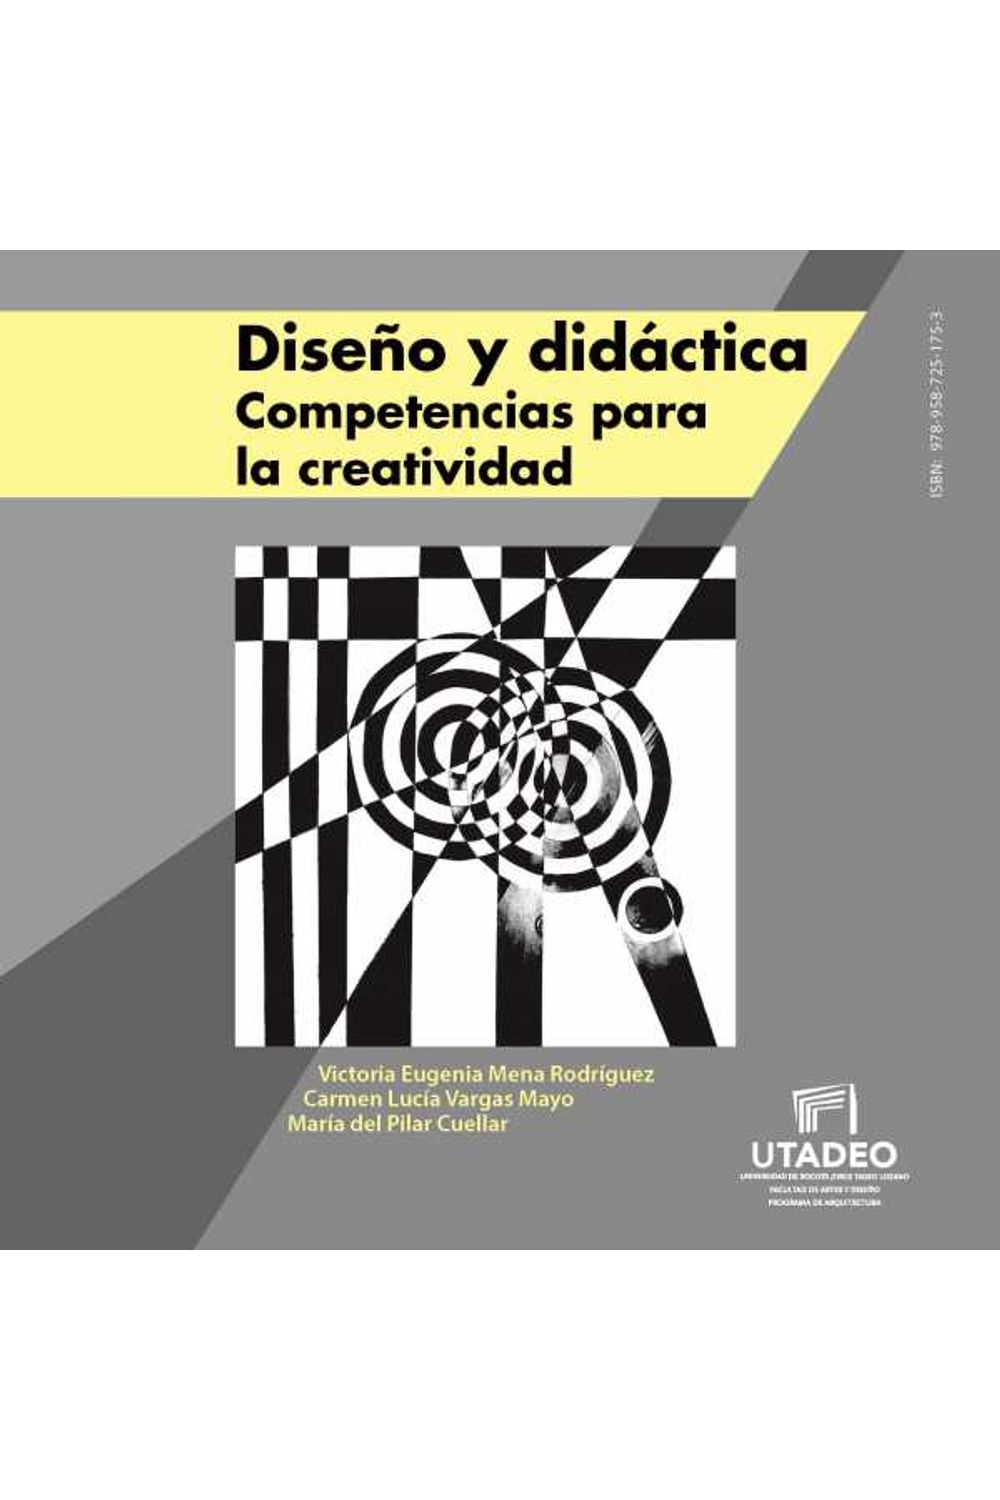 bw-disentildeo-y-didaacutectica-competencias-para-la-creatividad-editorial-utadeo-9789587251753